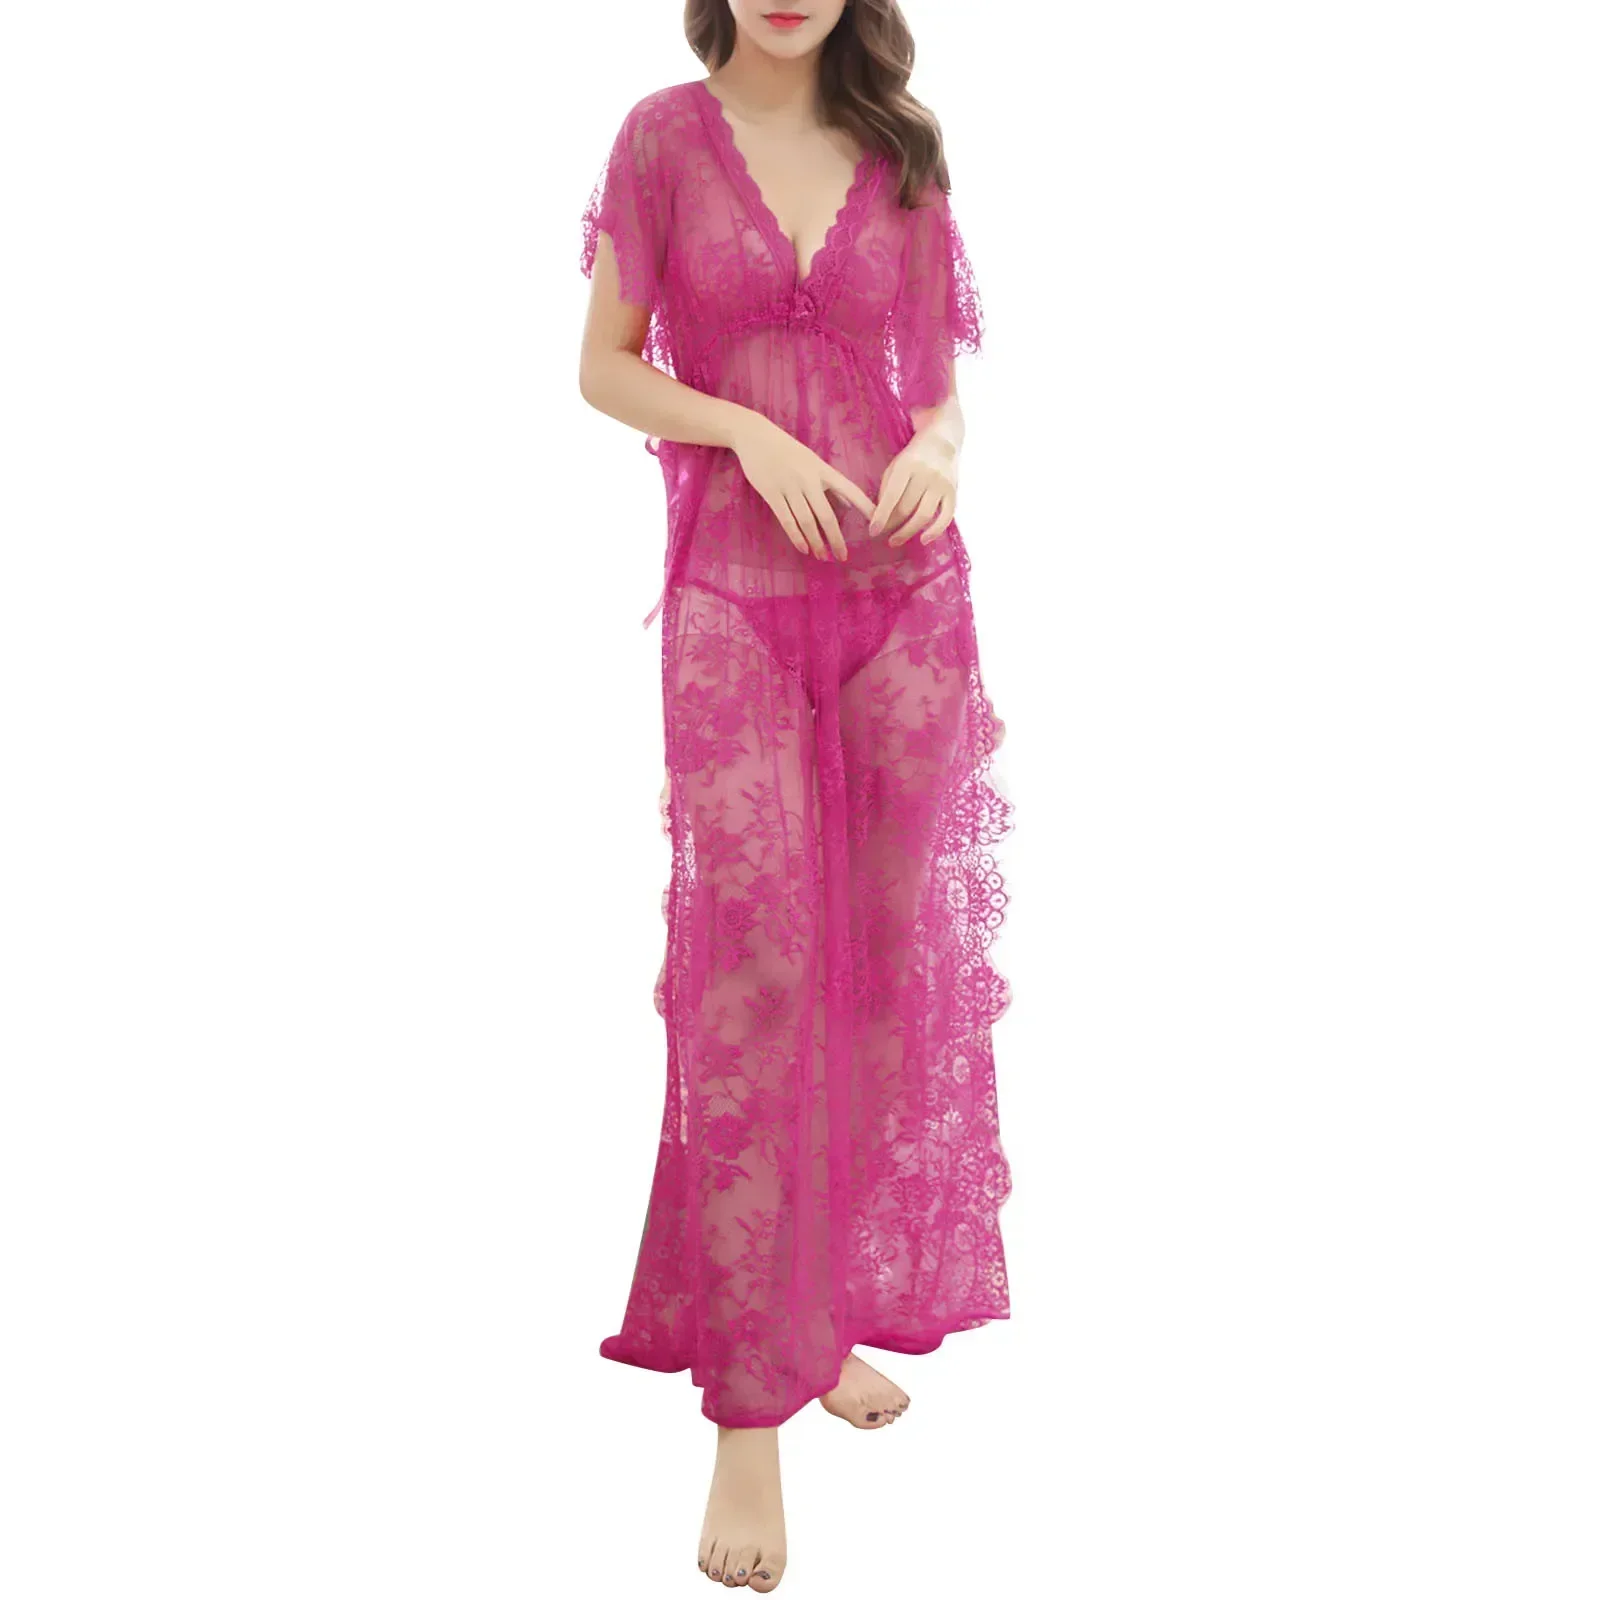 VEJARO G08 Women Long Sleepwear Round Neck Night Gown-Pink